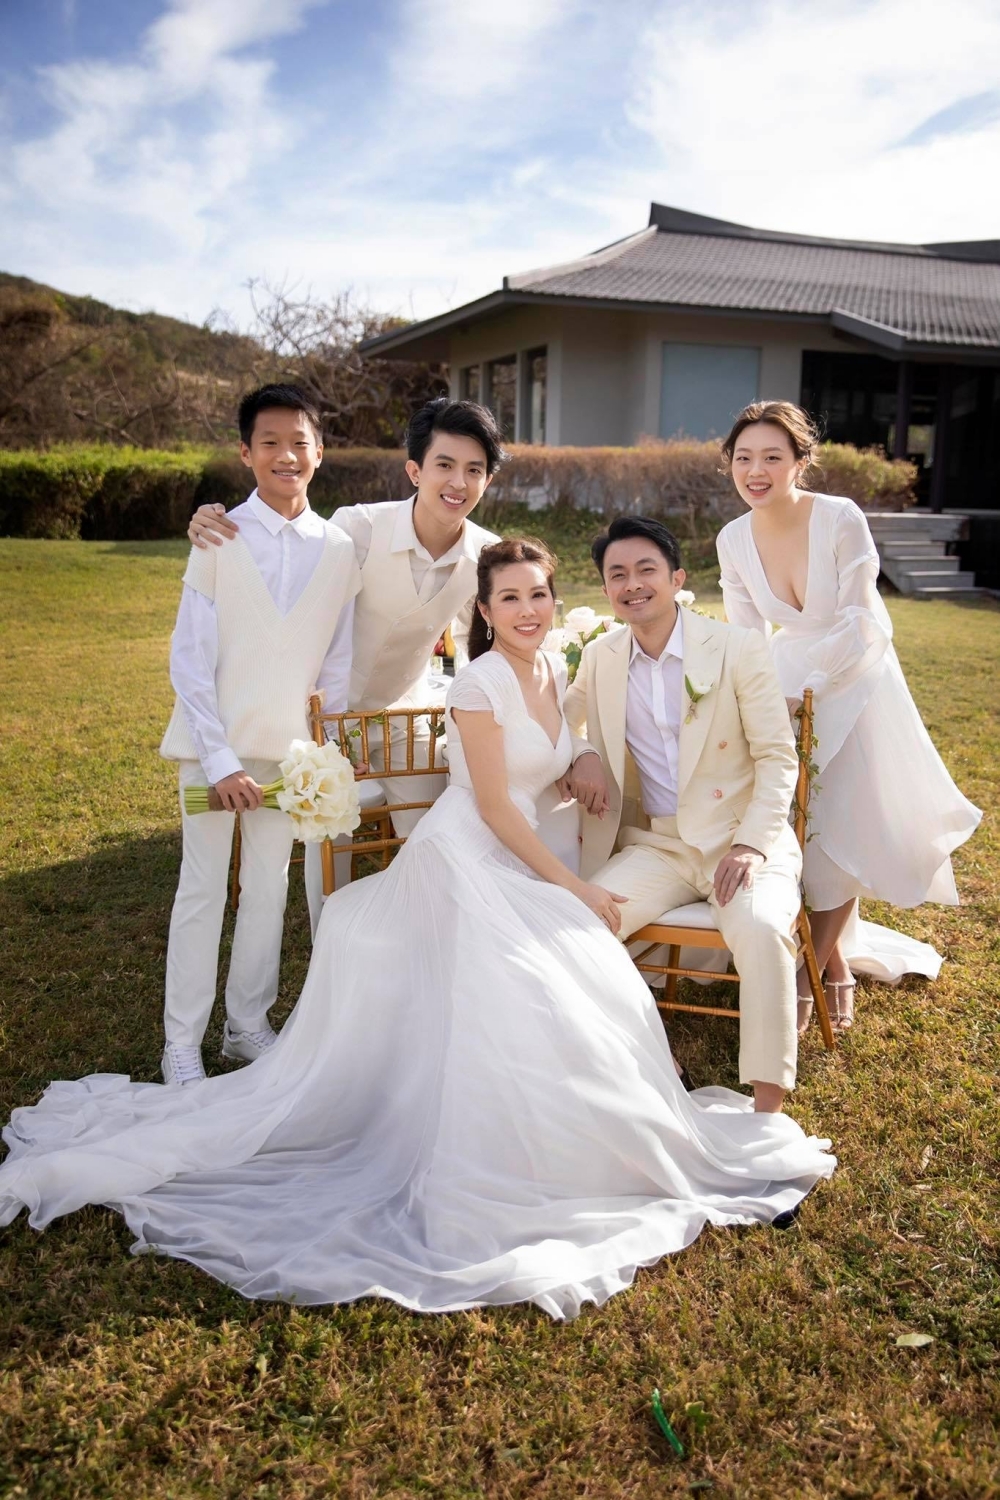 Tháng 6/2021, Thu Hoài thông báo đã đăng ký kết hôn với Trí Tống tại Mỹ, cả hai thực hiện bộ ảnh cưới cùng 3 con riêng của Thu Hoài. 